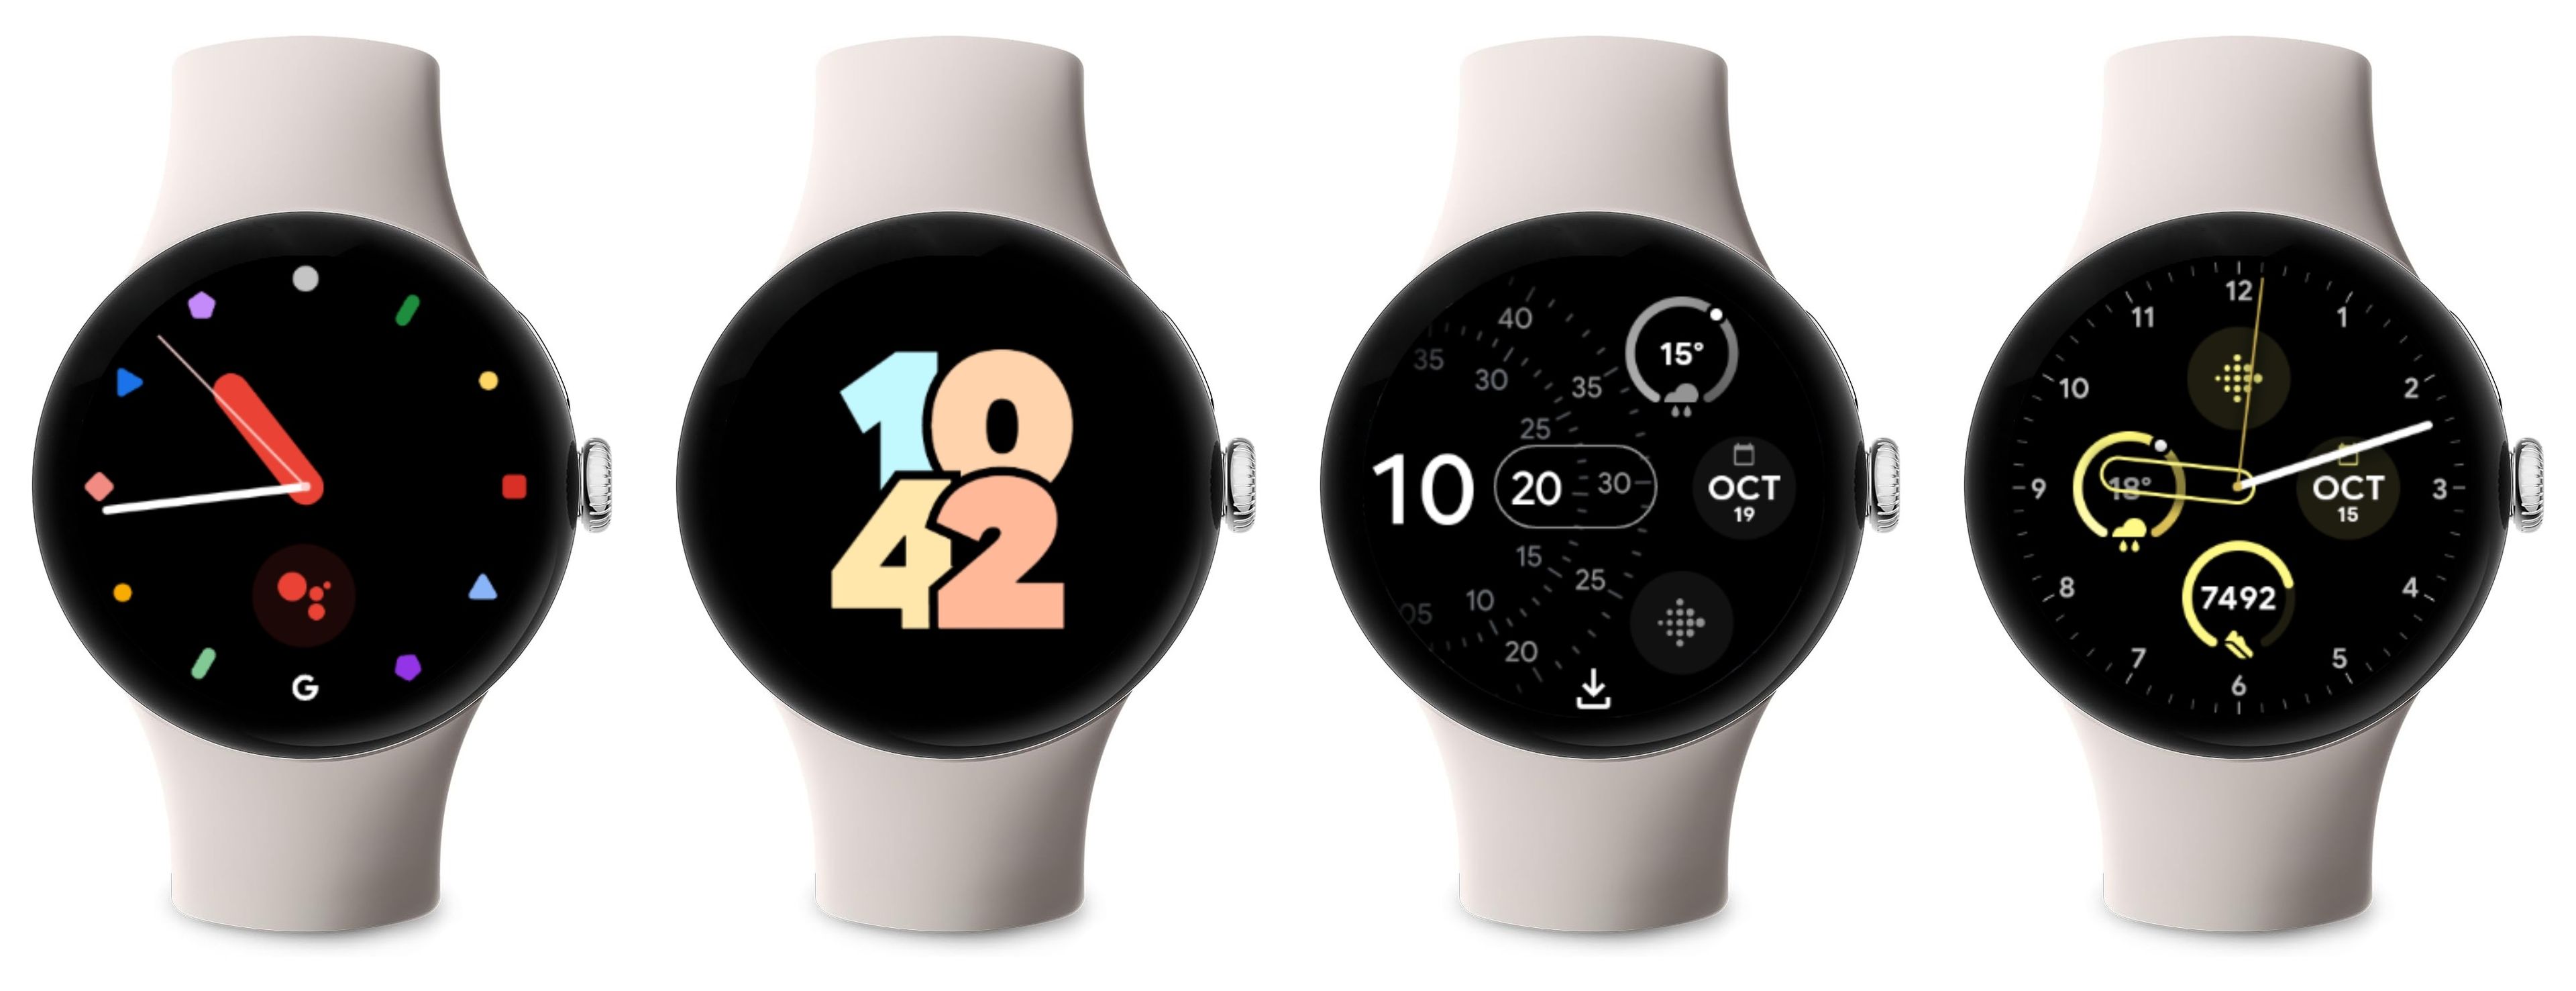 Google Pixel Watch 2, análisis - review con opinión y características